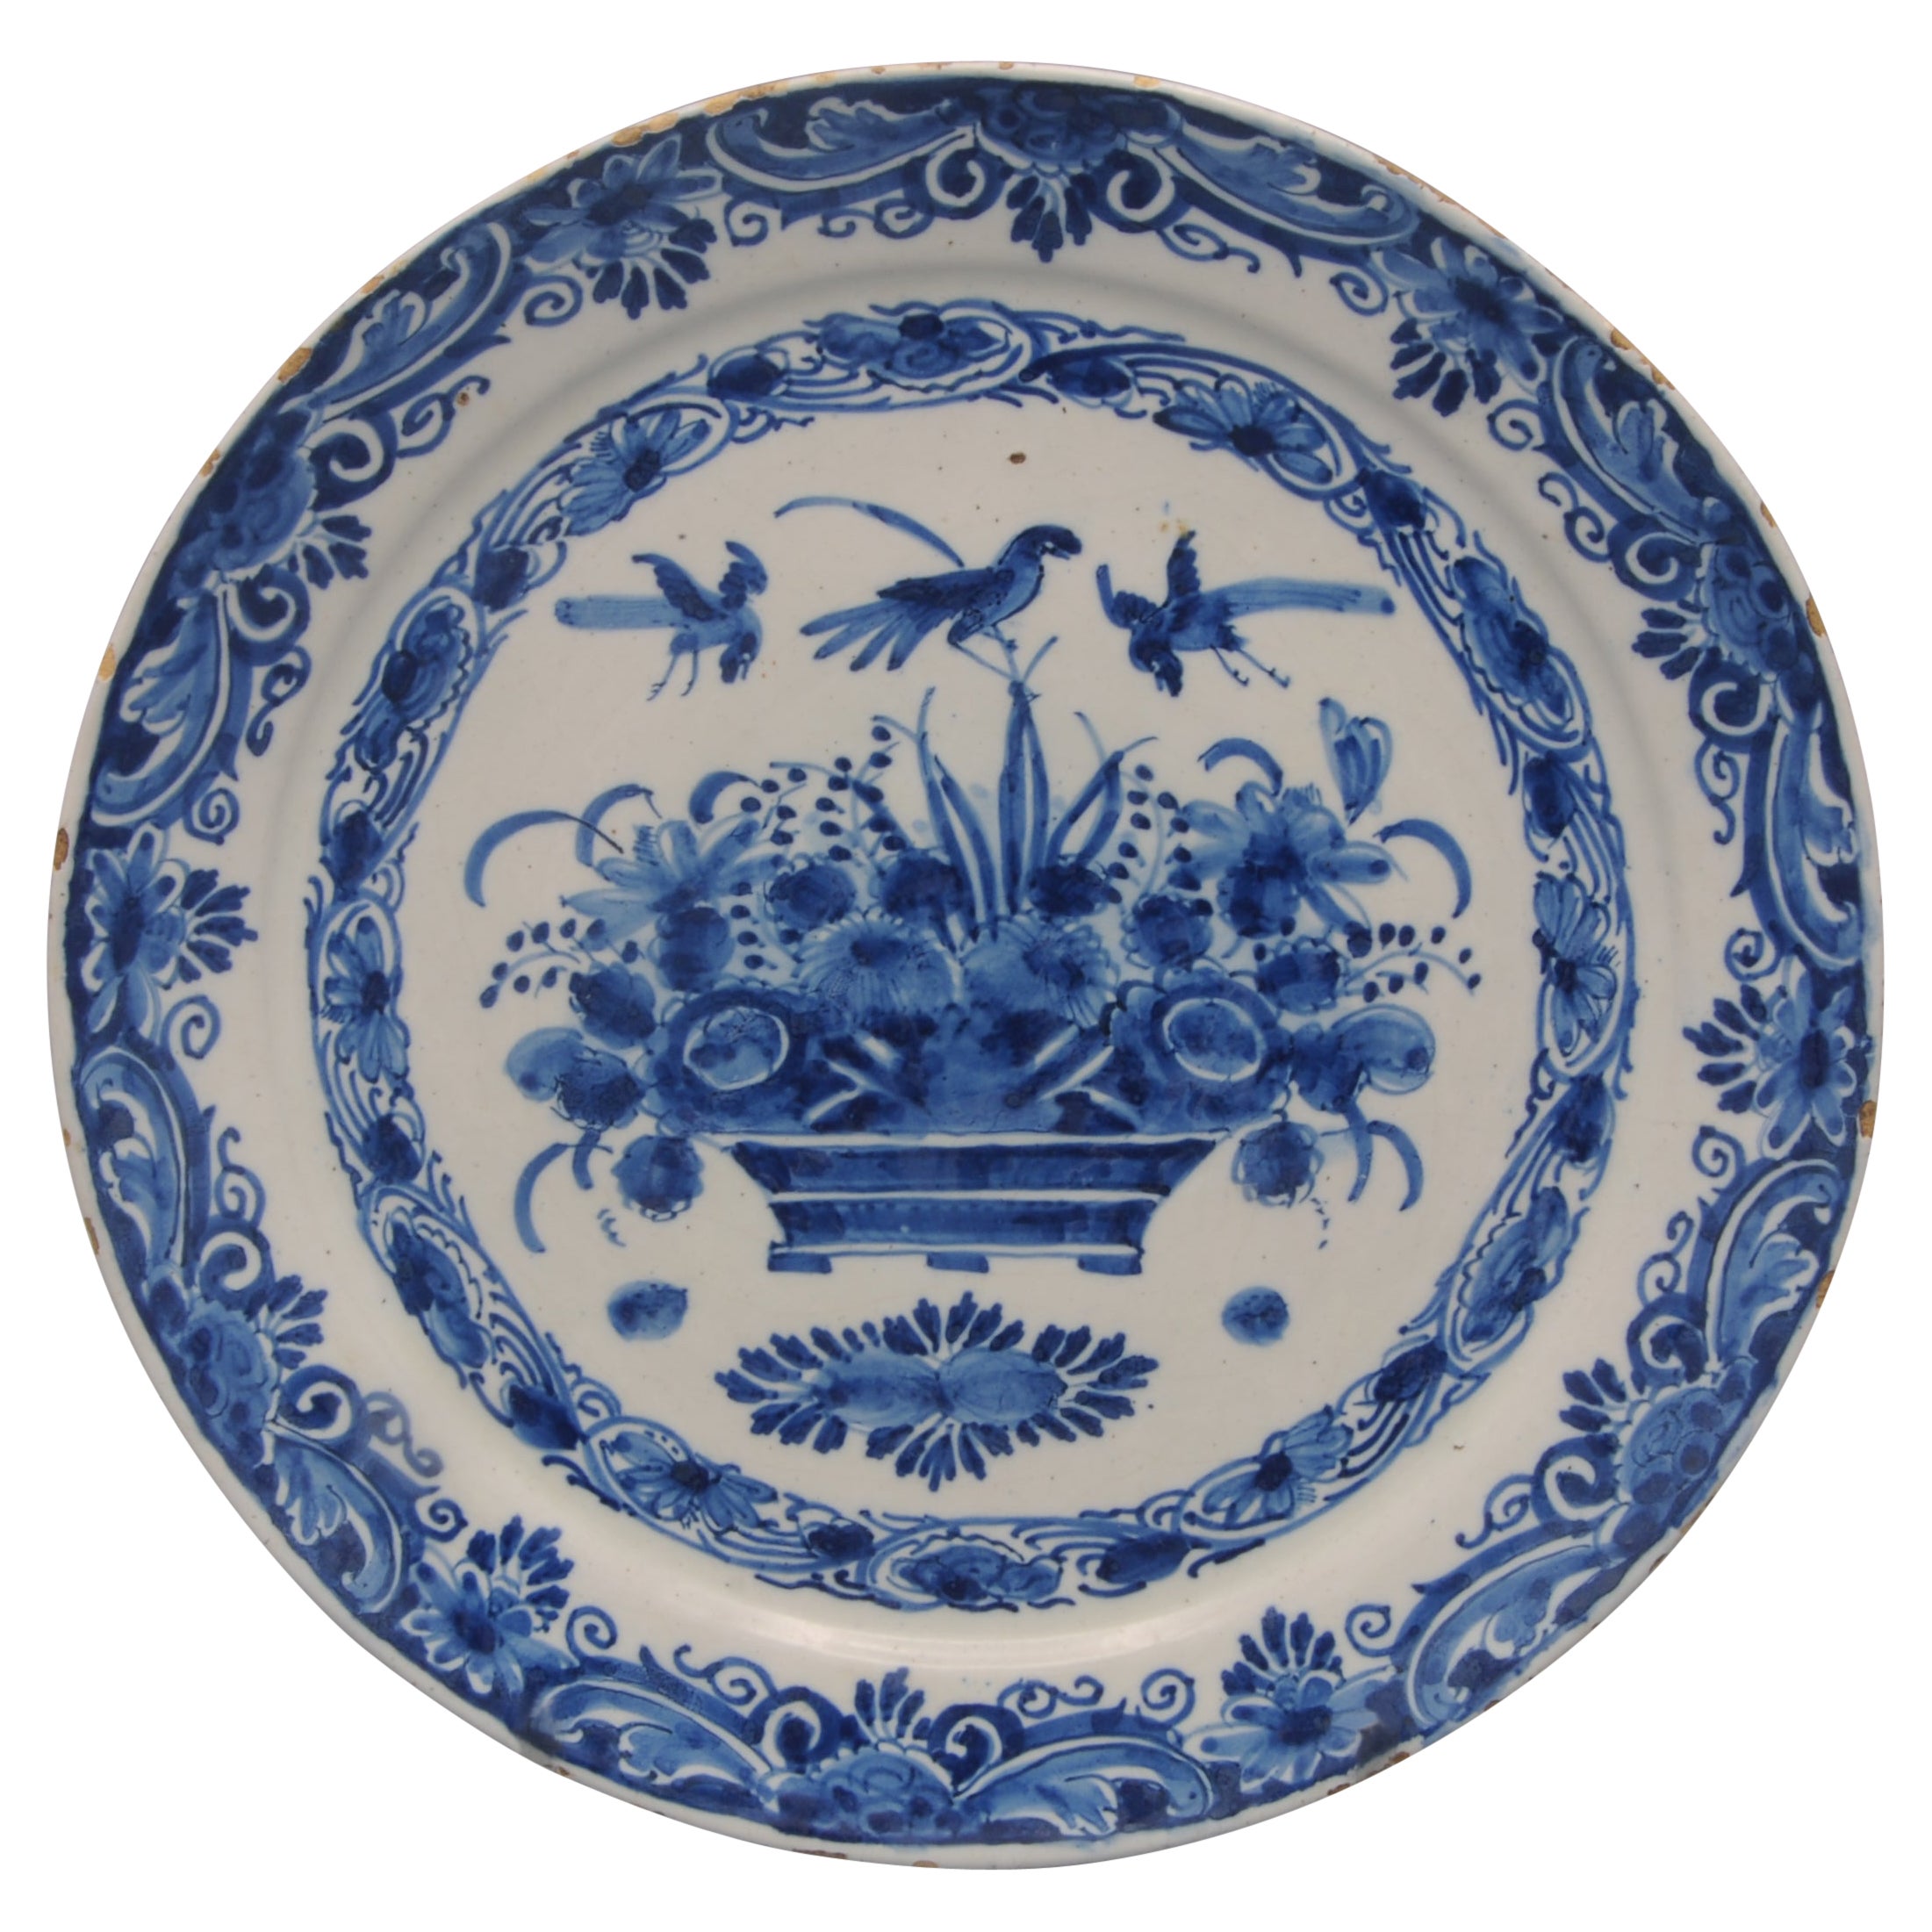 'De Grieksche A', Pieter Kocx - Dutch Delft plate with flower basket